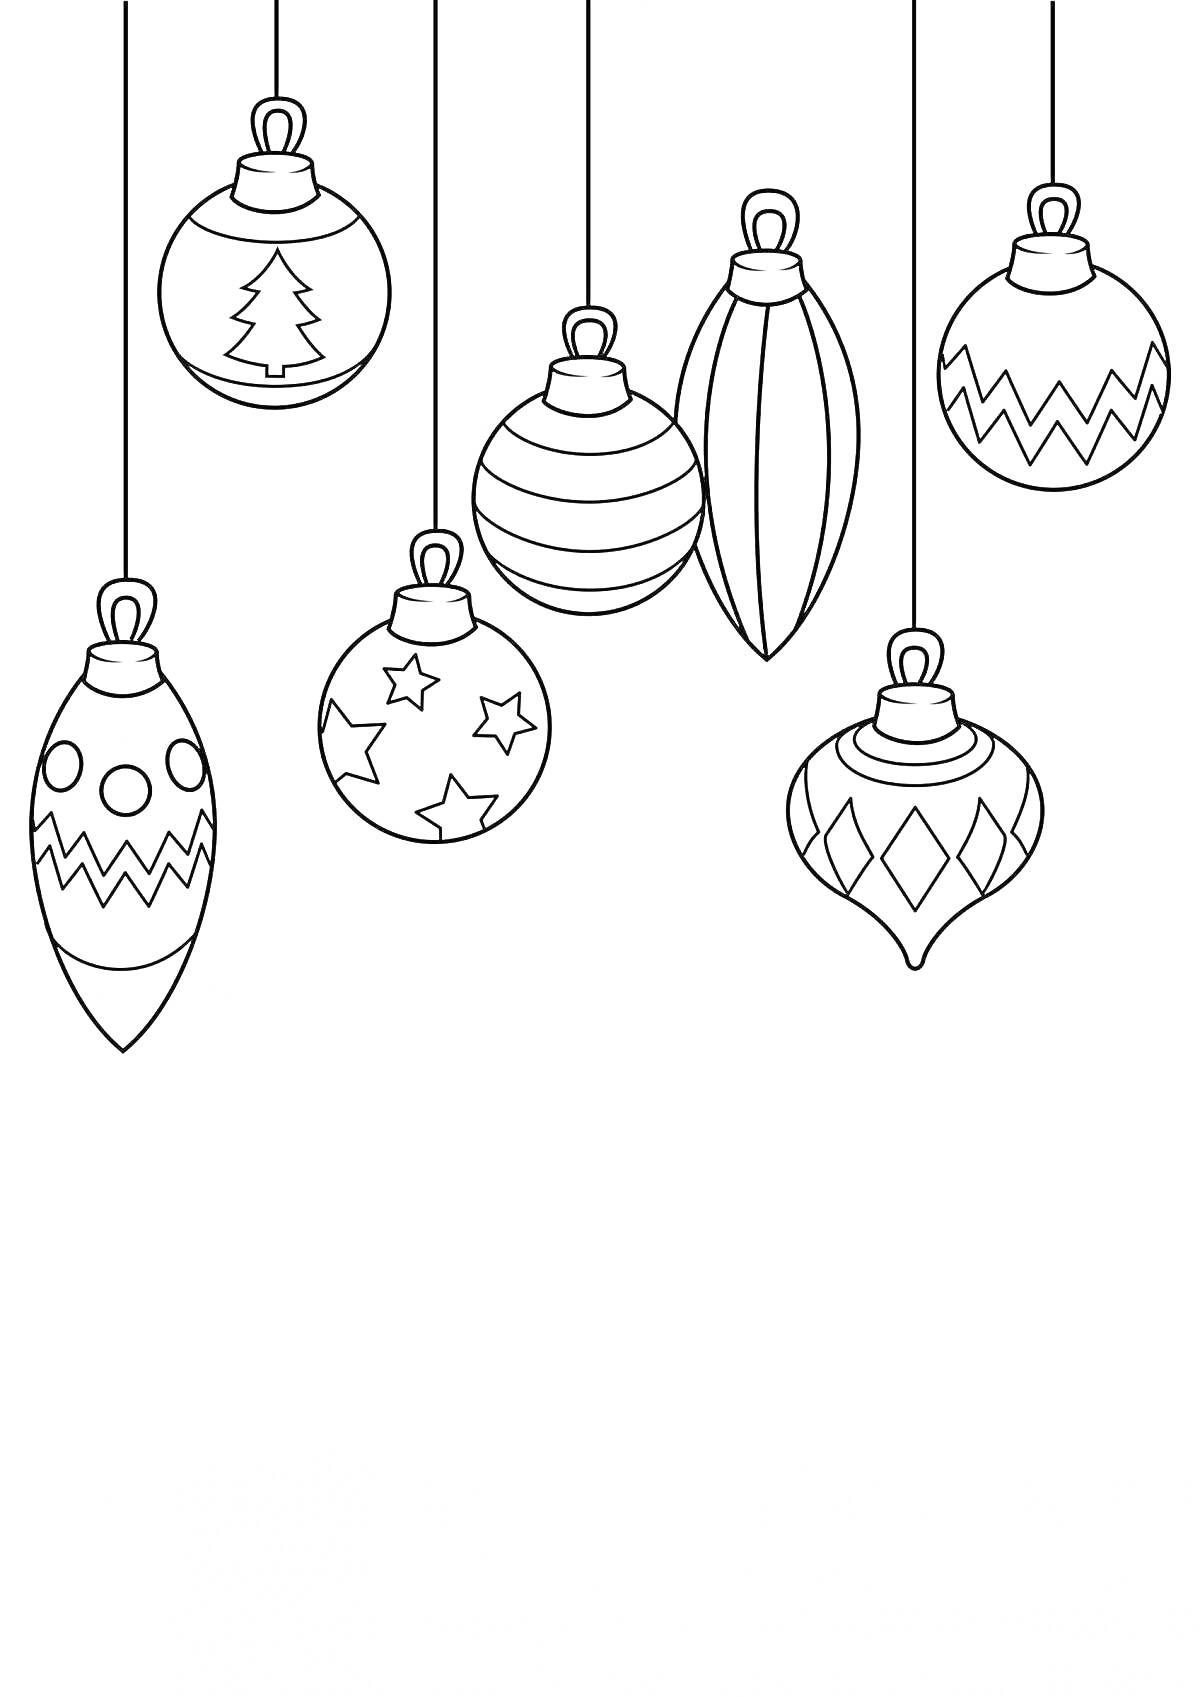 Раскраска Новогодние шарики с узорами (ёлочка, полоски, елочные игрушки разных форм)